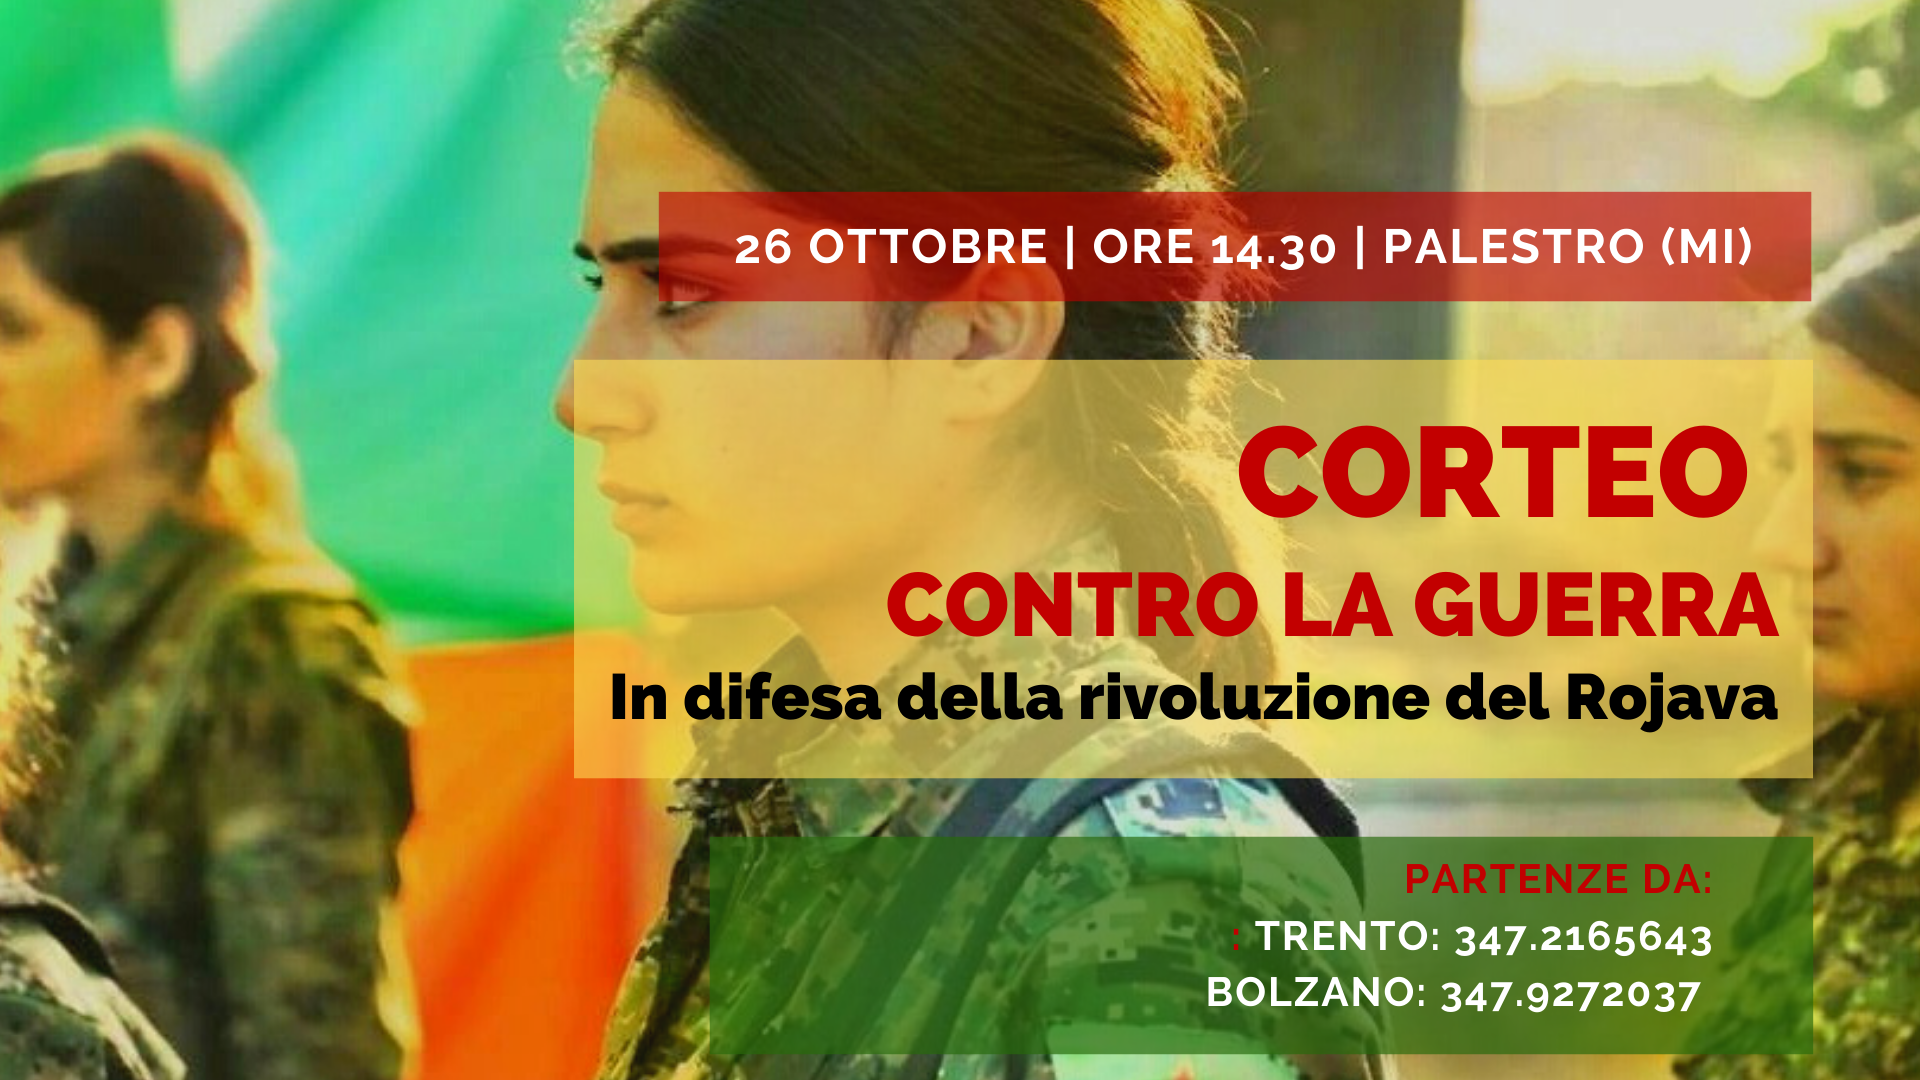 Corteo a Milano sabato 26 ottobre in difesa della Rivoluzione nel Rojava